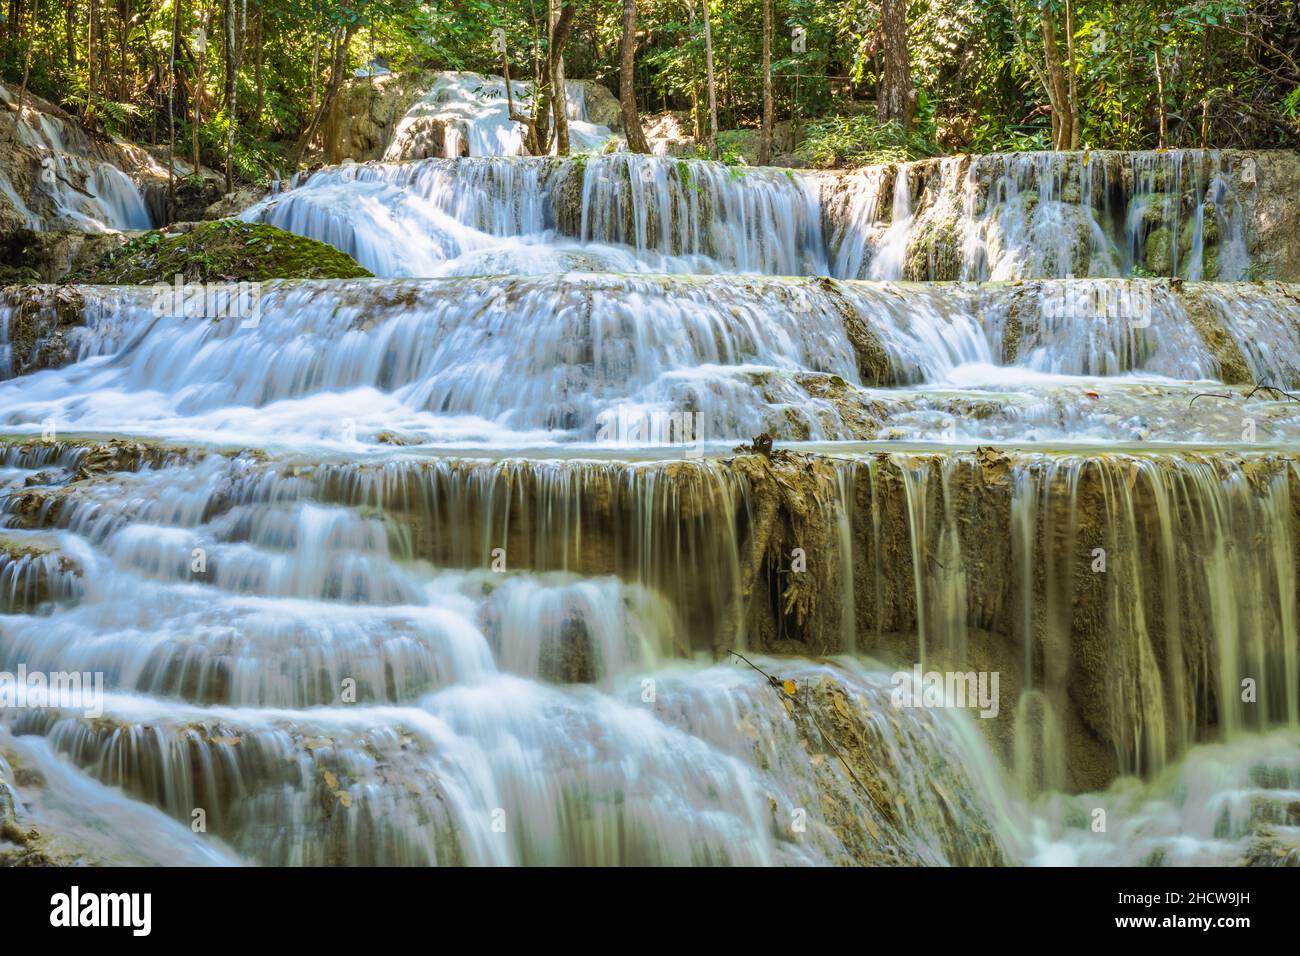 Erawan Nationalpark in Thailand. Der Erawan-Wasserfall ist ein beliebtes Touristenziel und berühmt für sein smaragdblaues Wasser. Tiefer Wald Stockfoto